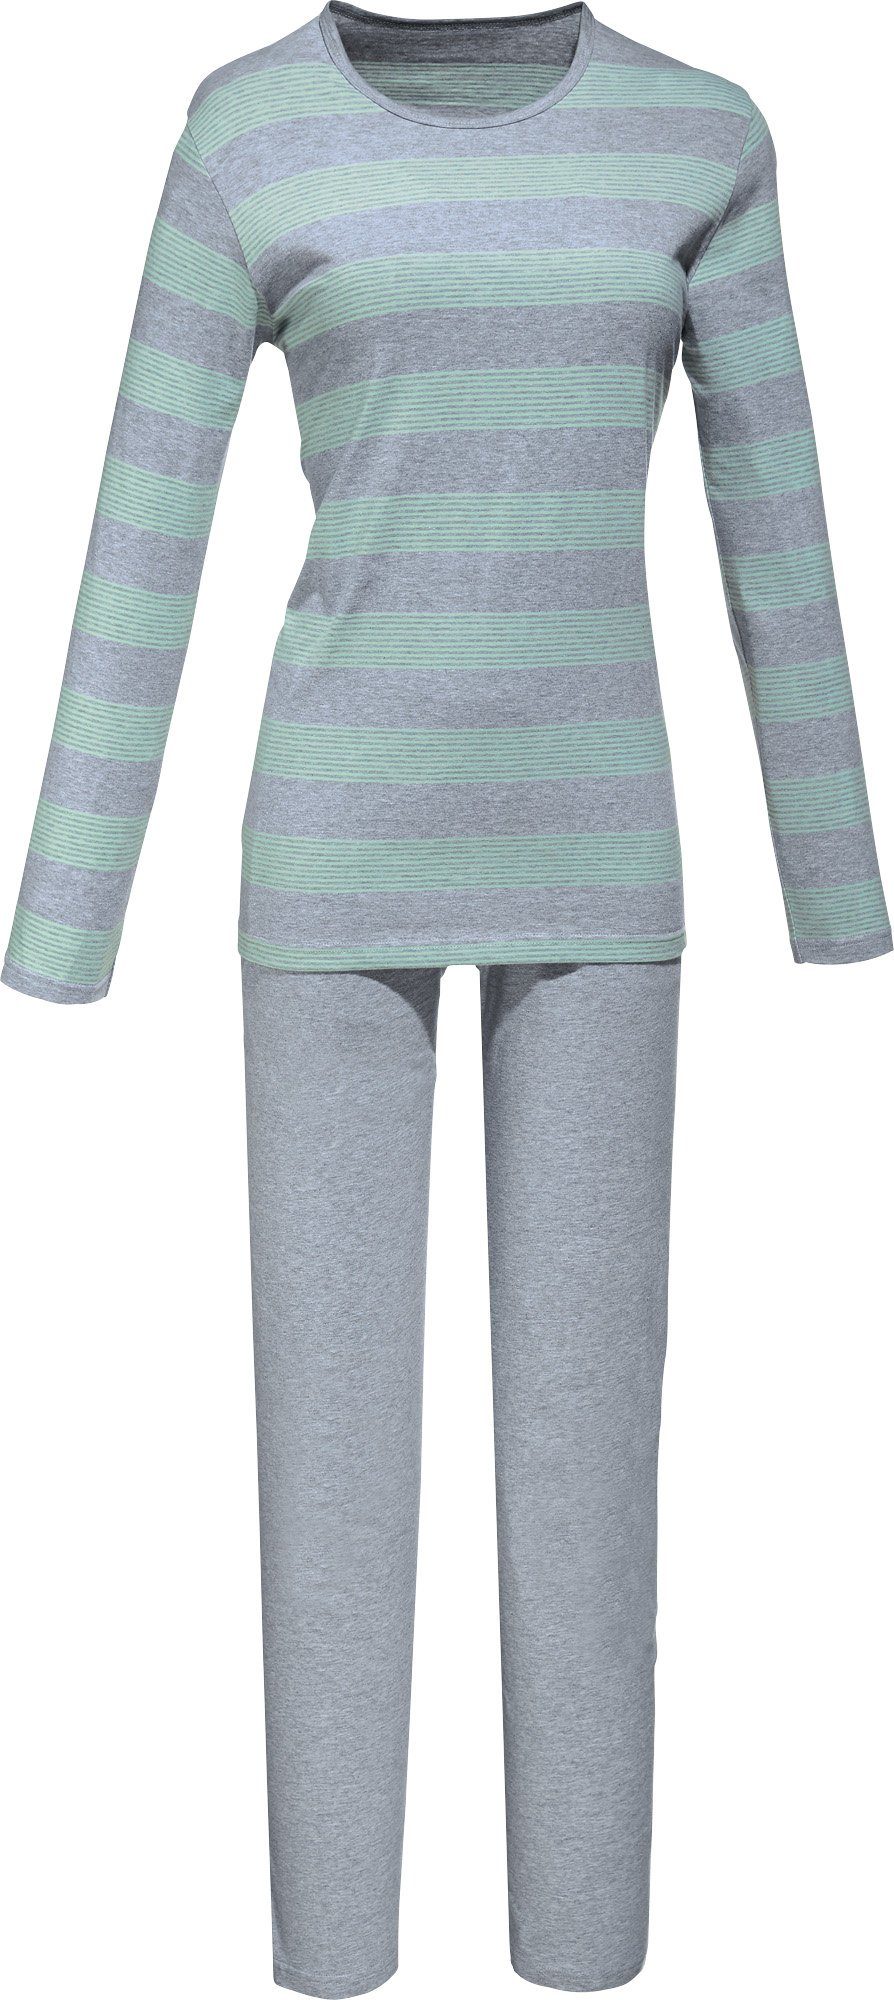 REDBEST Single-Jersey Pyjama Damen-Schlafanzug Streifen